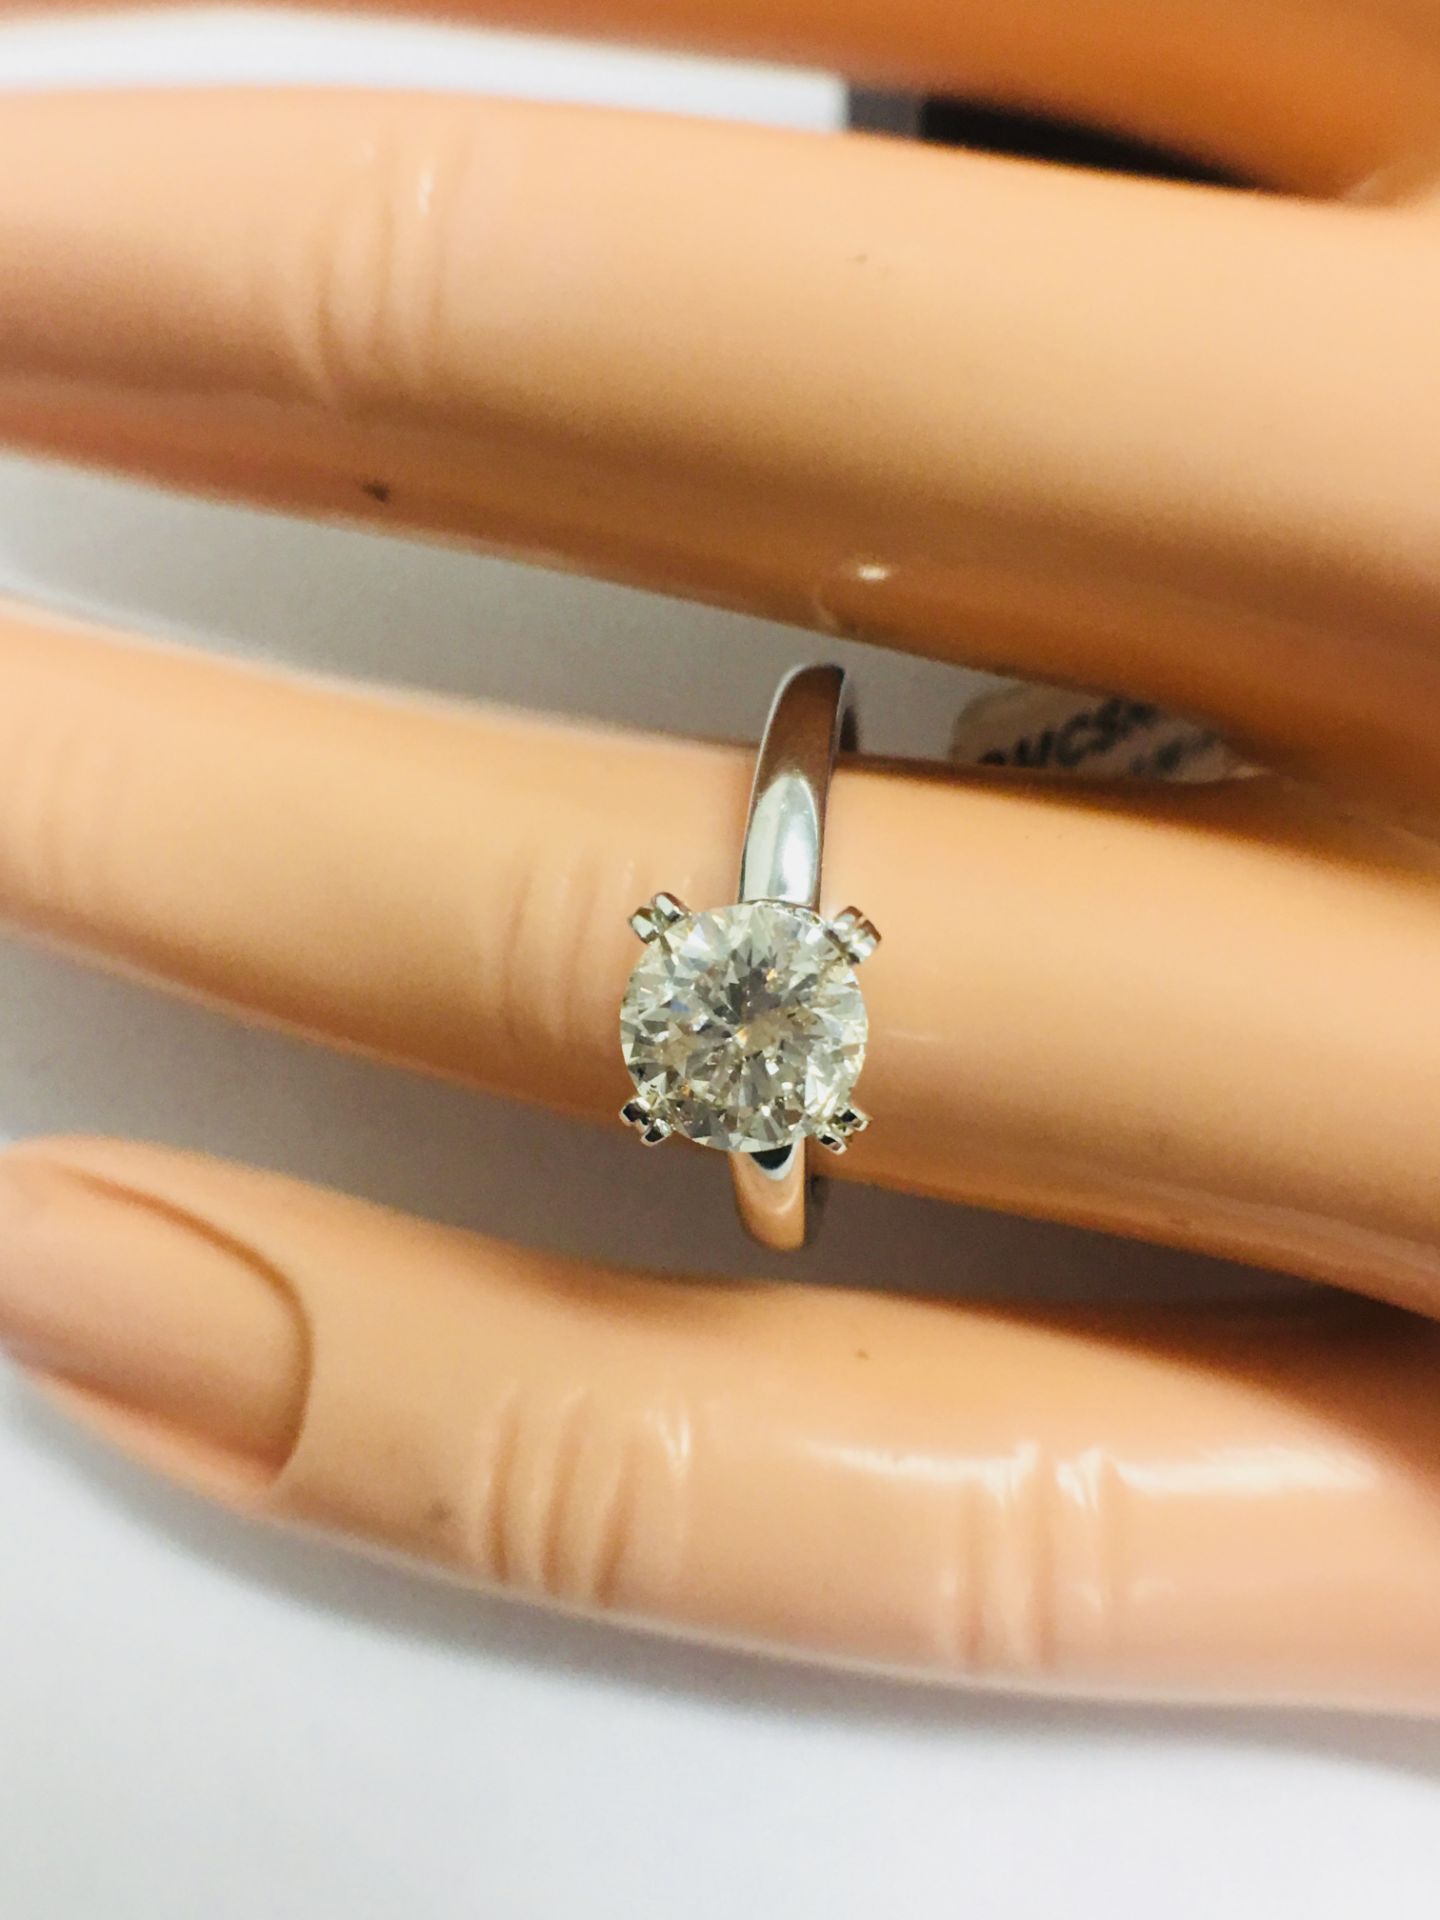 1ct Diamond Solitaire ring set in Platinum diamnd setting - Image 13 of 13